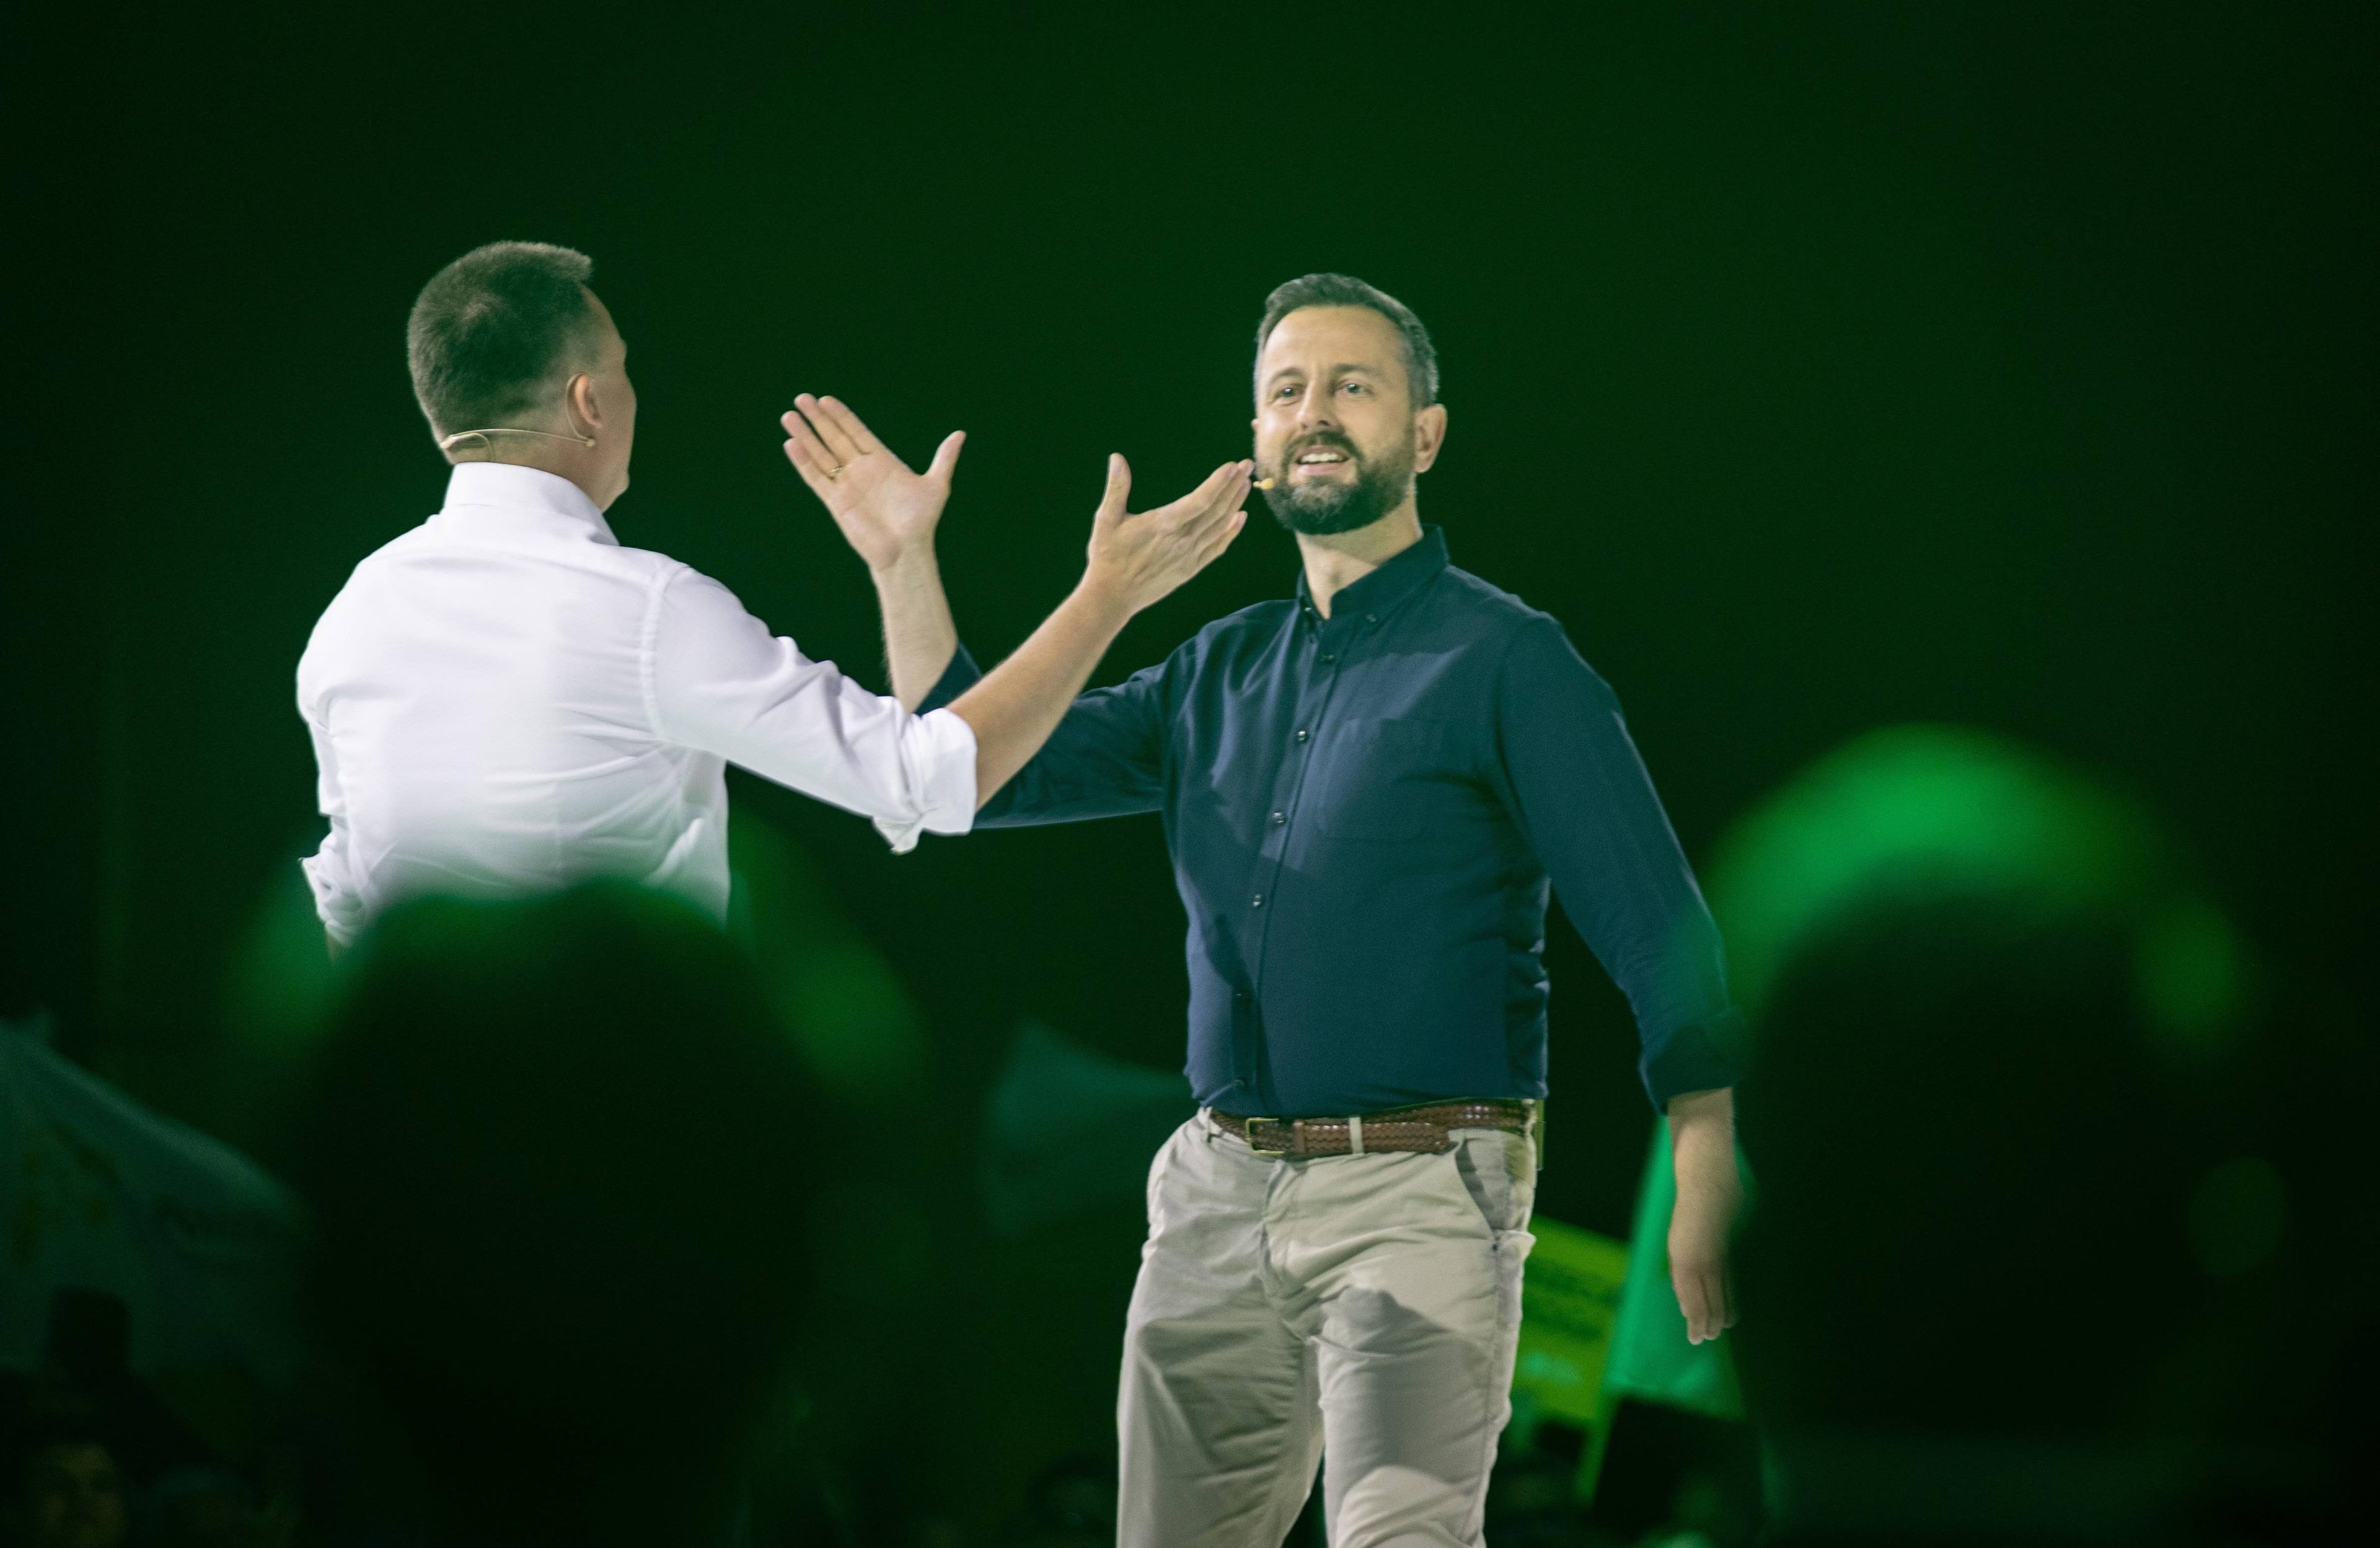 Szymon Hołownia i Władysław Kosiniak-Kamysz przybijają sobie piątkę na scenie podczas wiecu wyborczego